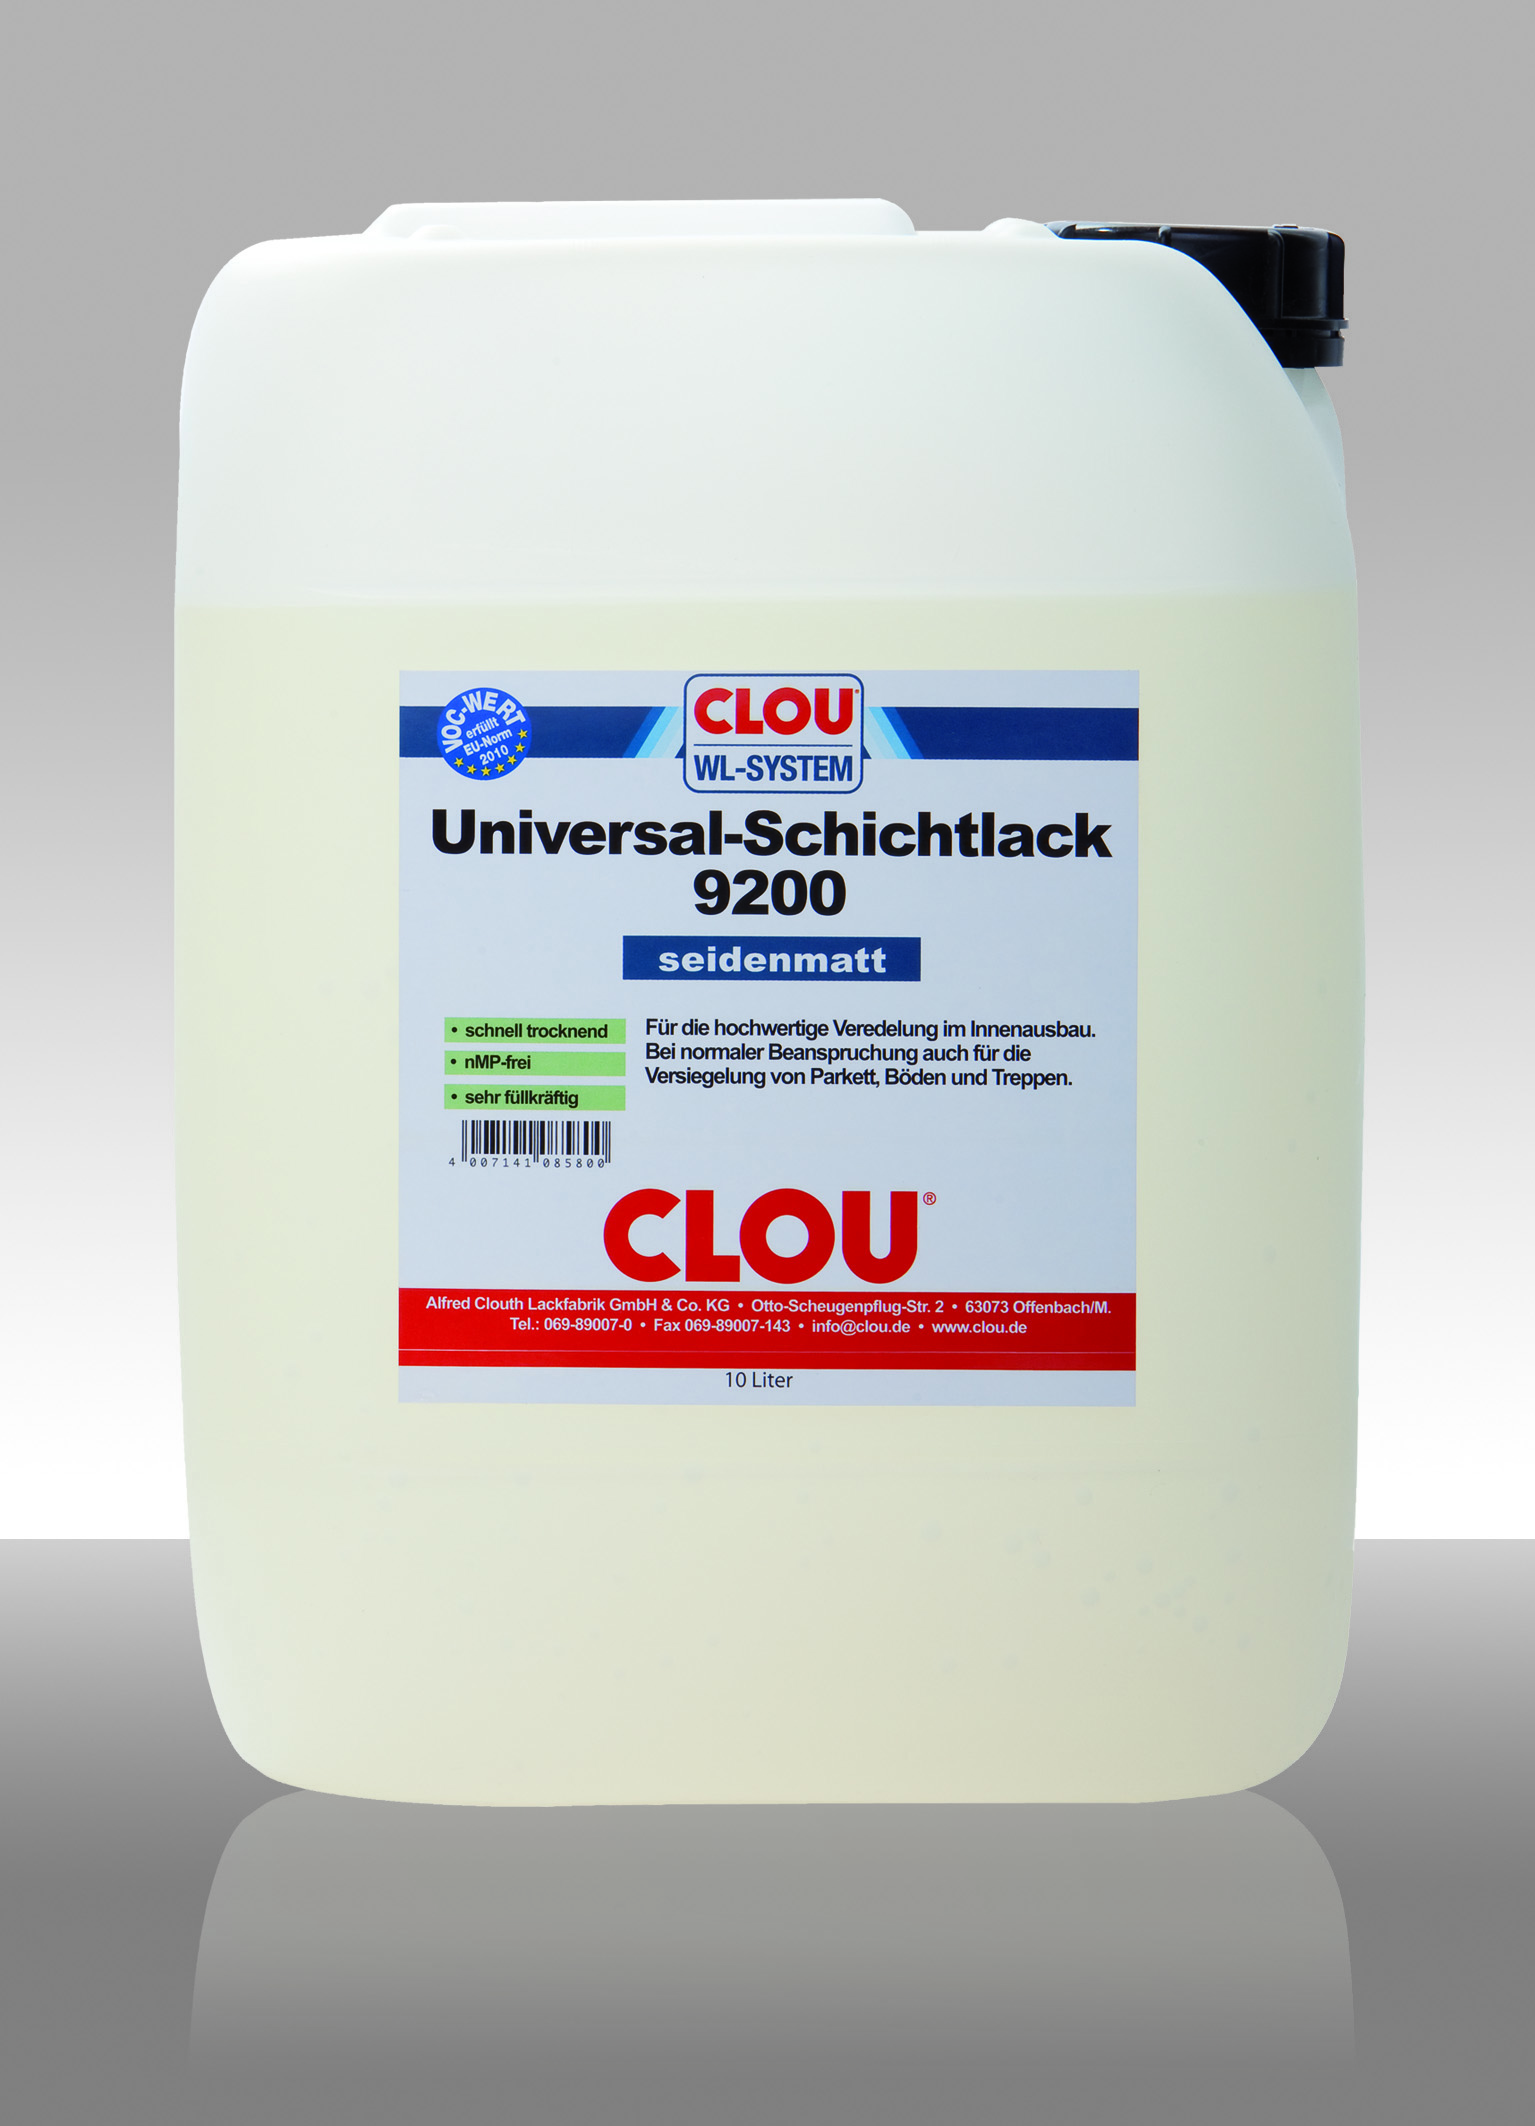 CLOU Universal-Schichtlack 9200 seidenmatt